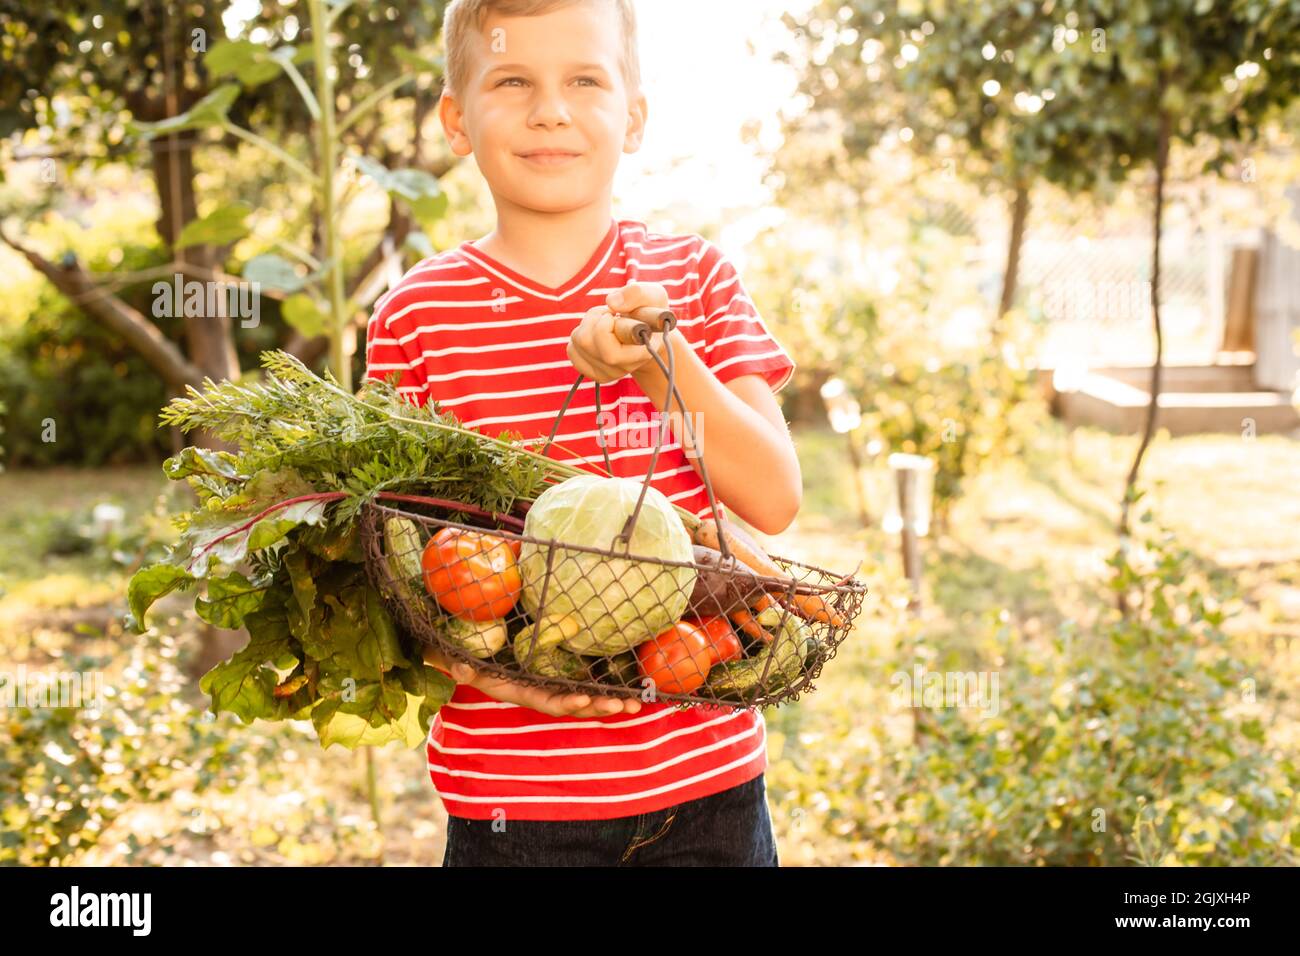 Der kleine Junge hält in seinen Händen einen Korb mit frischem Gemüse. Er steht auf dem Hintergrund des Gartens Stockfoto